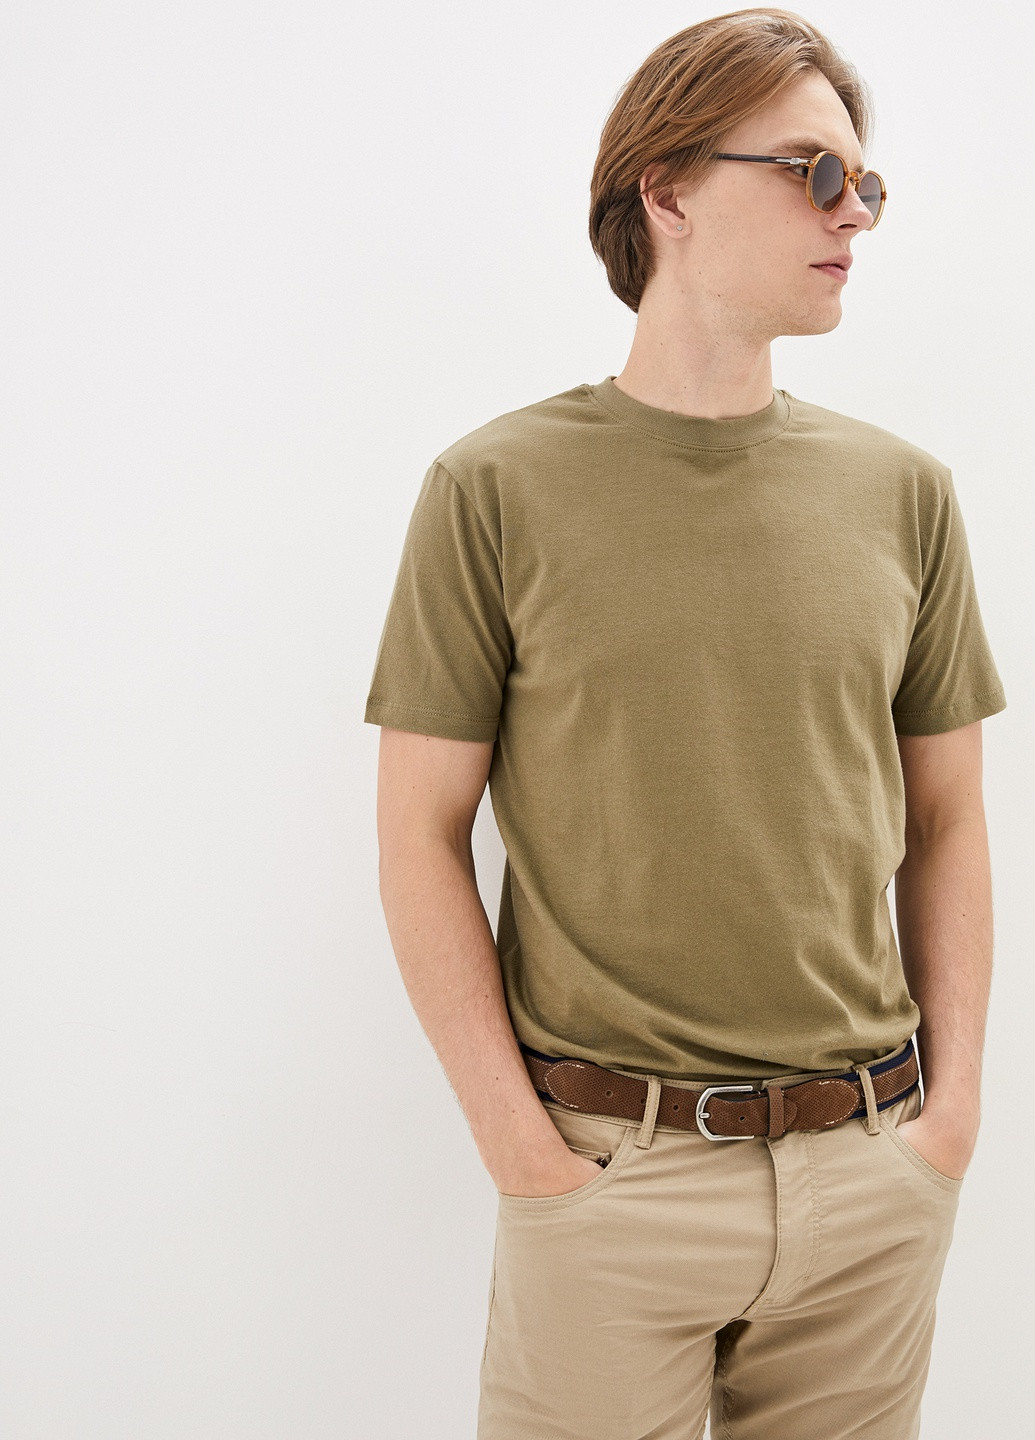 Хакі (оливкова) футболка чоловіча базова з коротким рукавом Роза